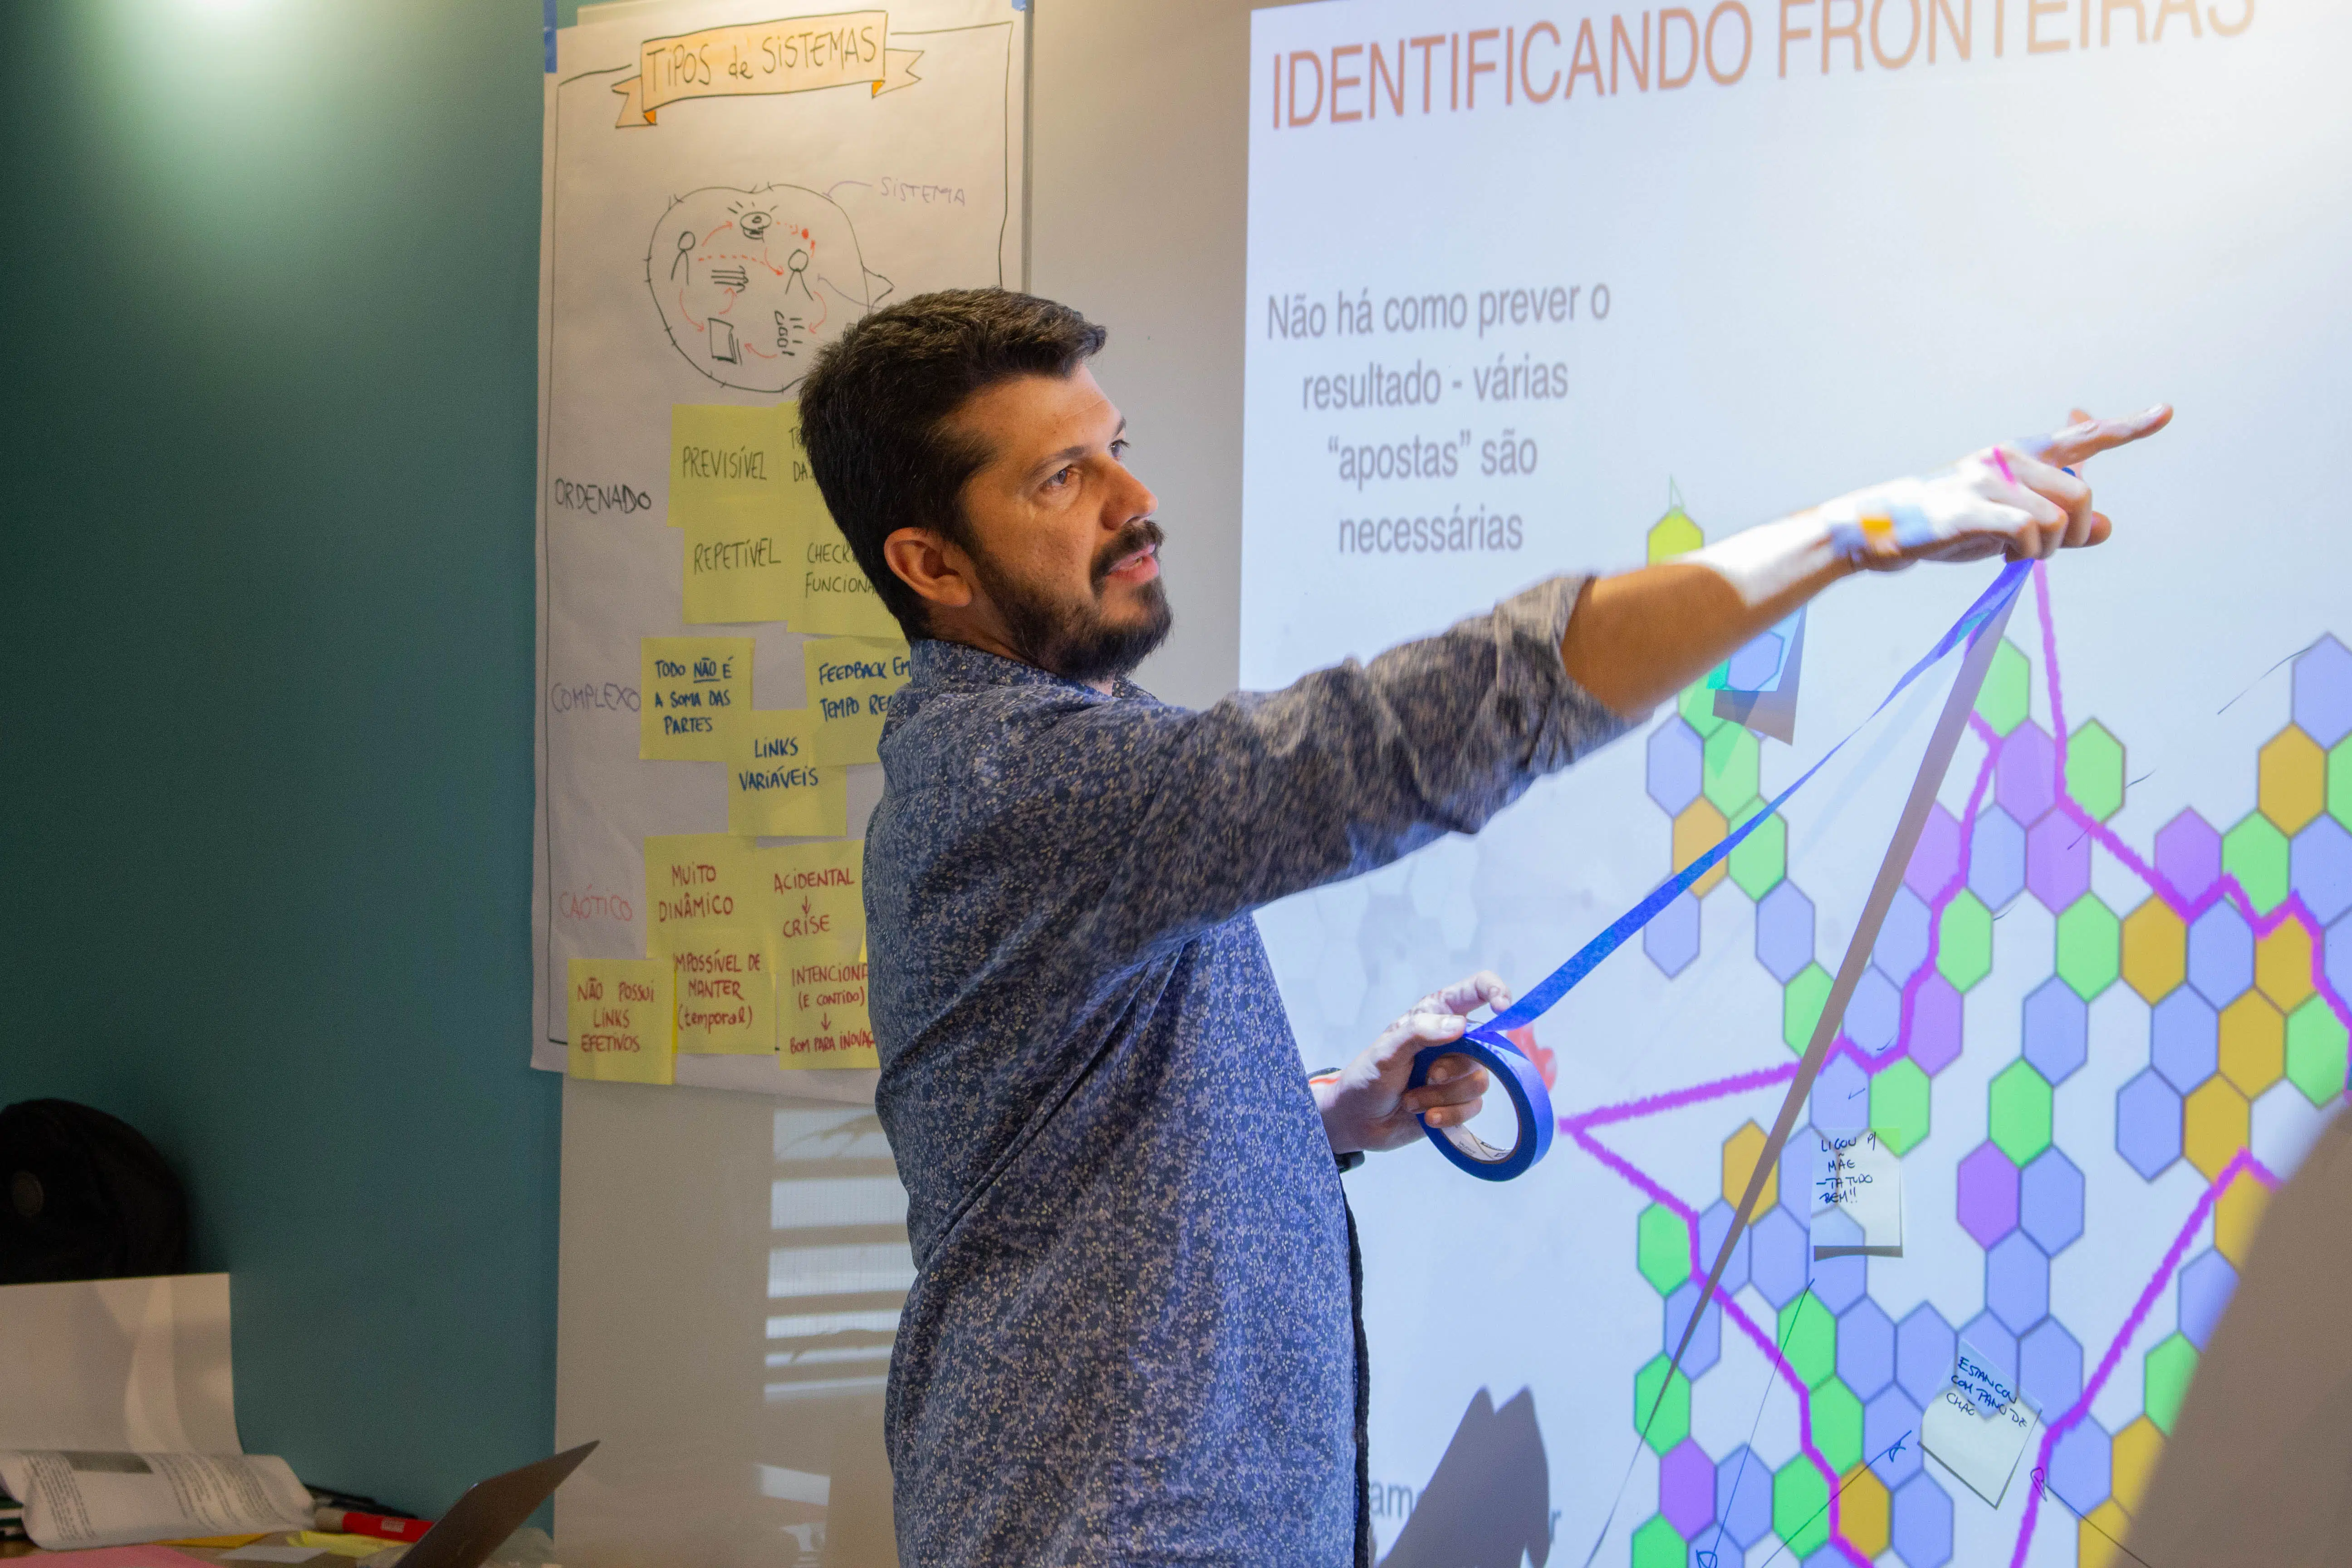 Itaú Unibanco incorpora startup Emergee, que atua com Business Agility